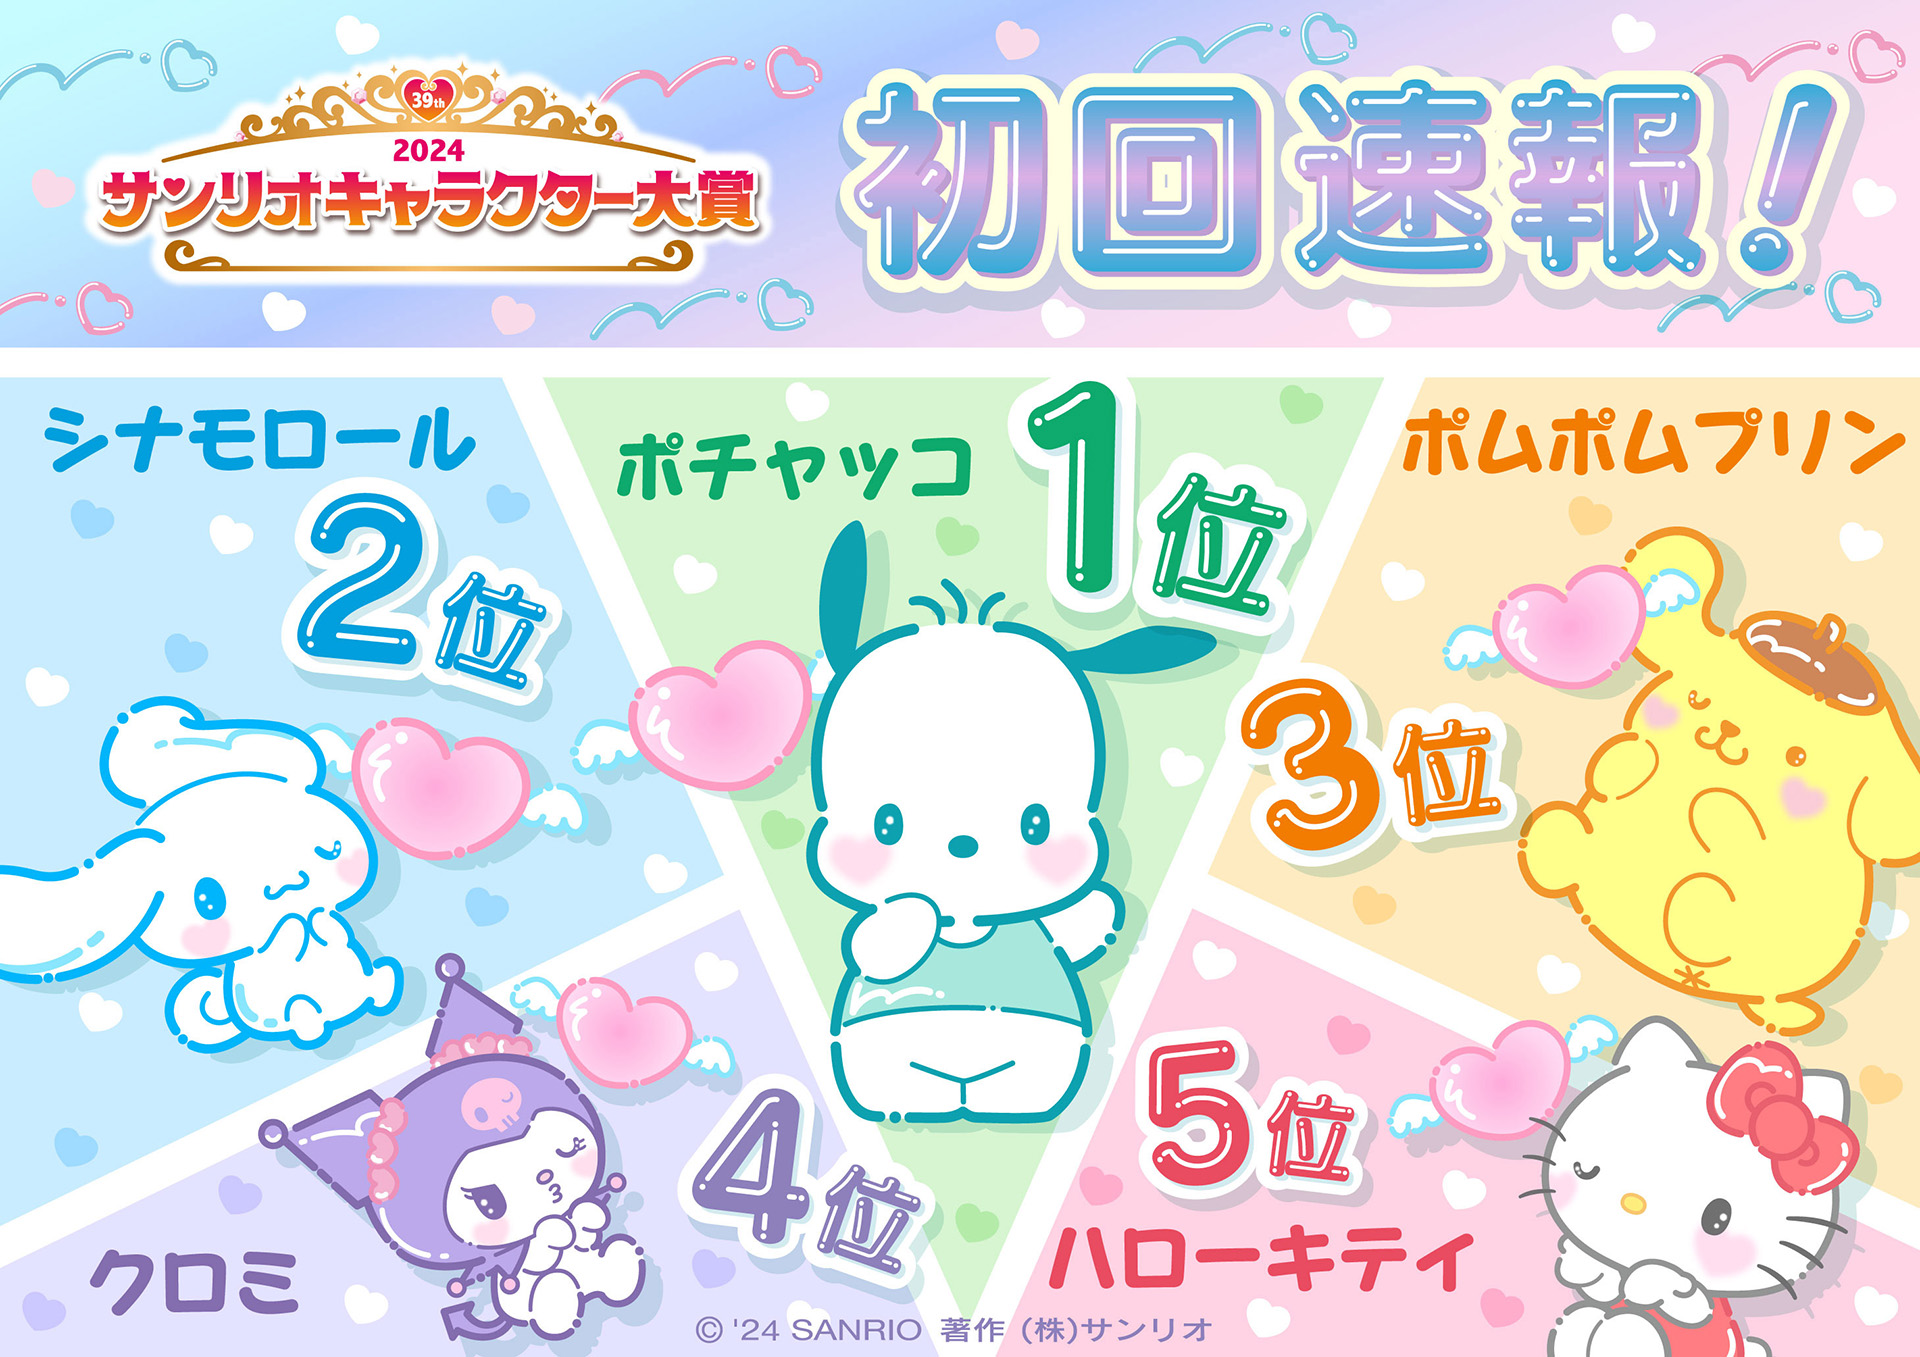 Annonce du premier classement préliminaire du “Sanrio Character Award 2024”. La première place dans le premier rapport préliminaire est “Pochacco”, qui fête son 35e anniversaire depuis ses débuts – GAME Watch